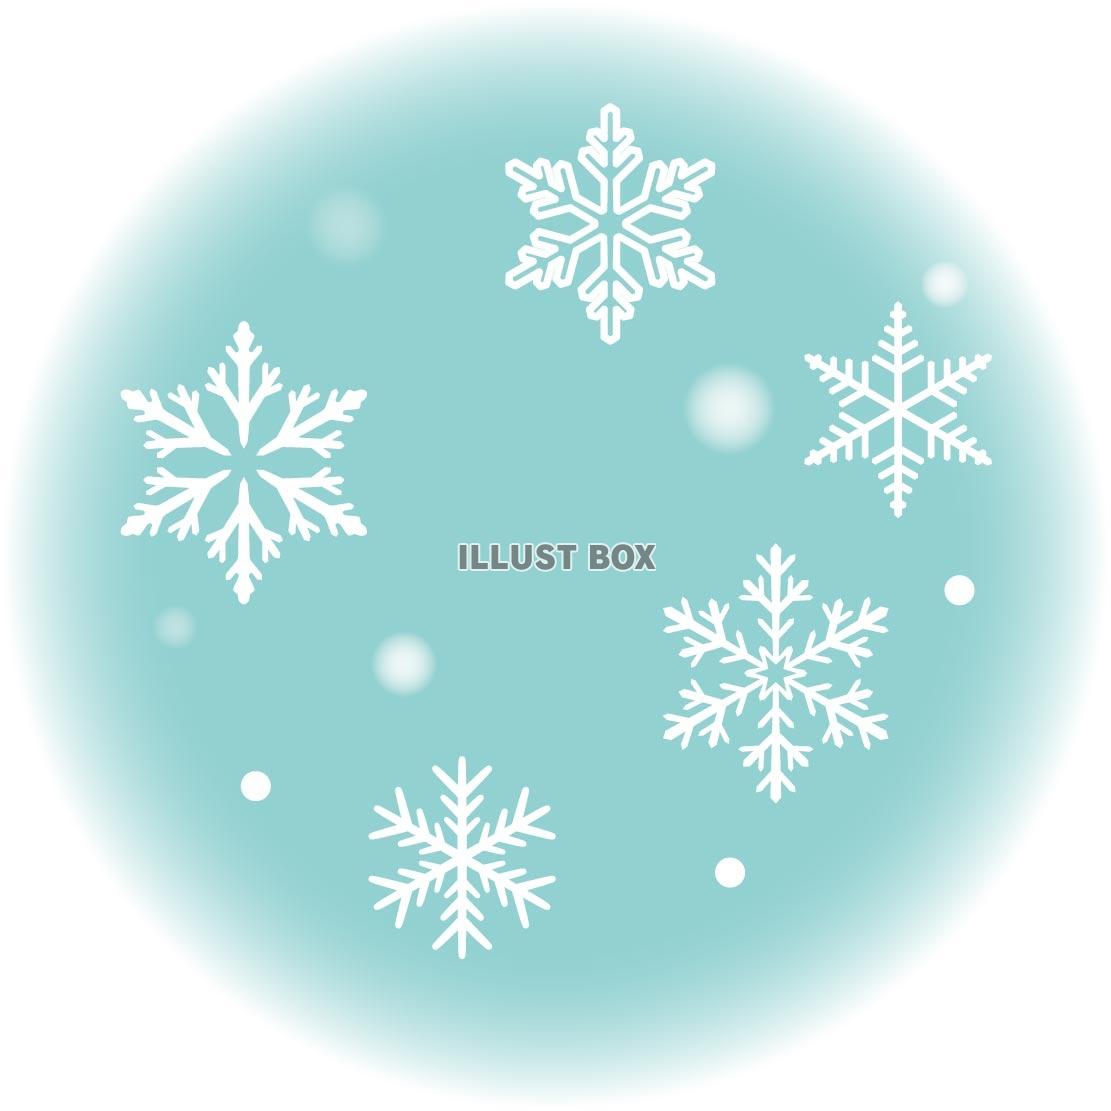 雪の結晶のかわいい手書き風イラストアイコン 可愛い絵文字アイコン